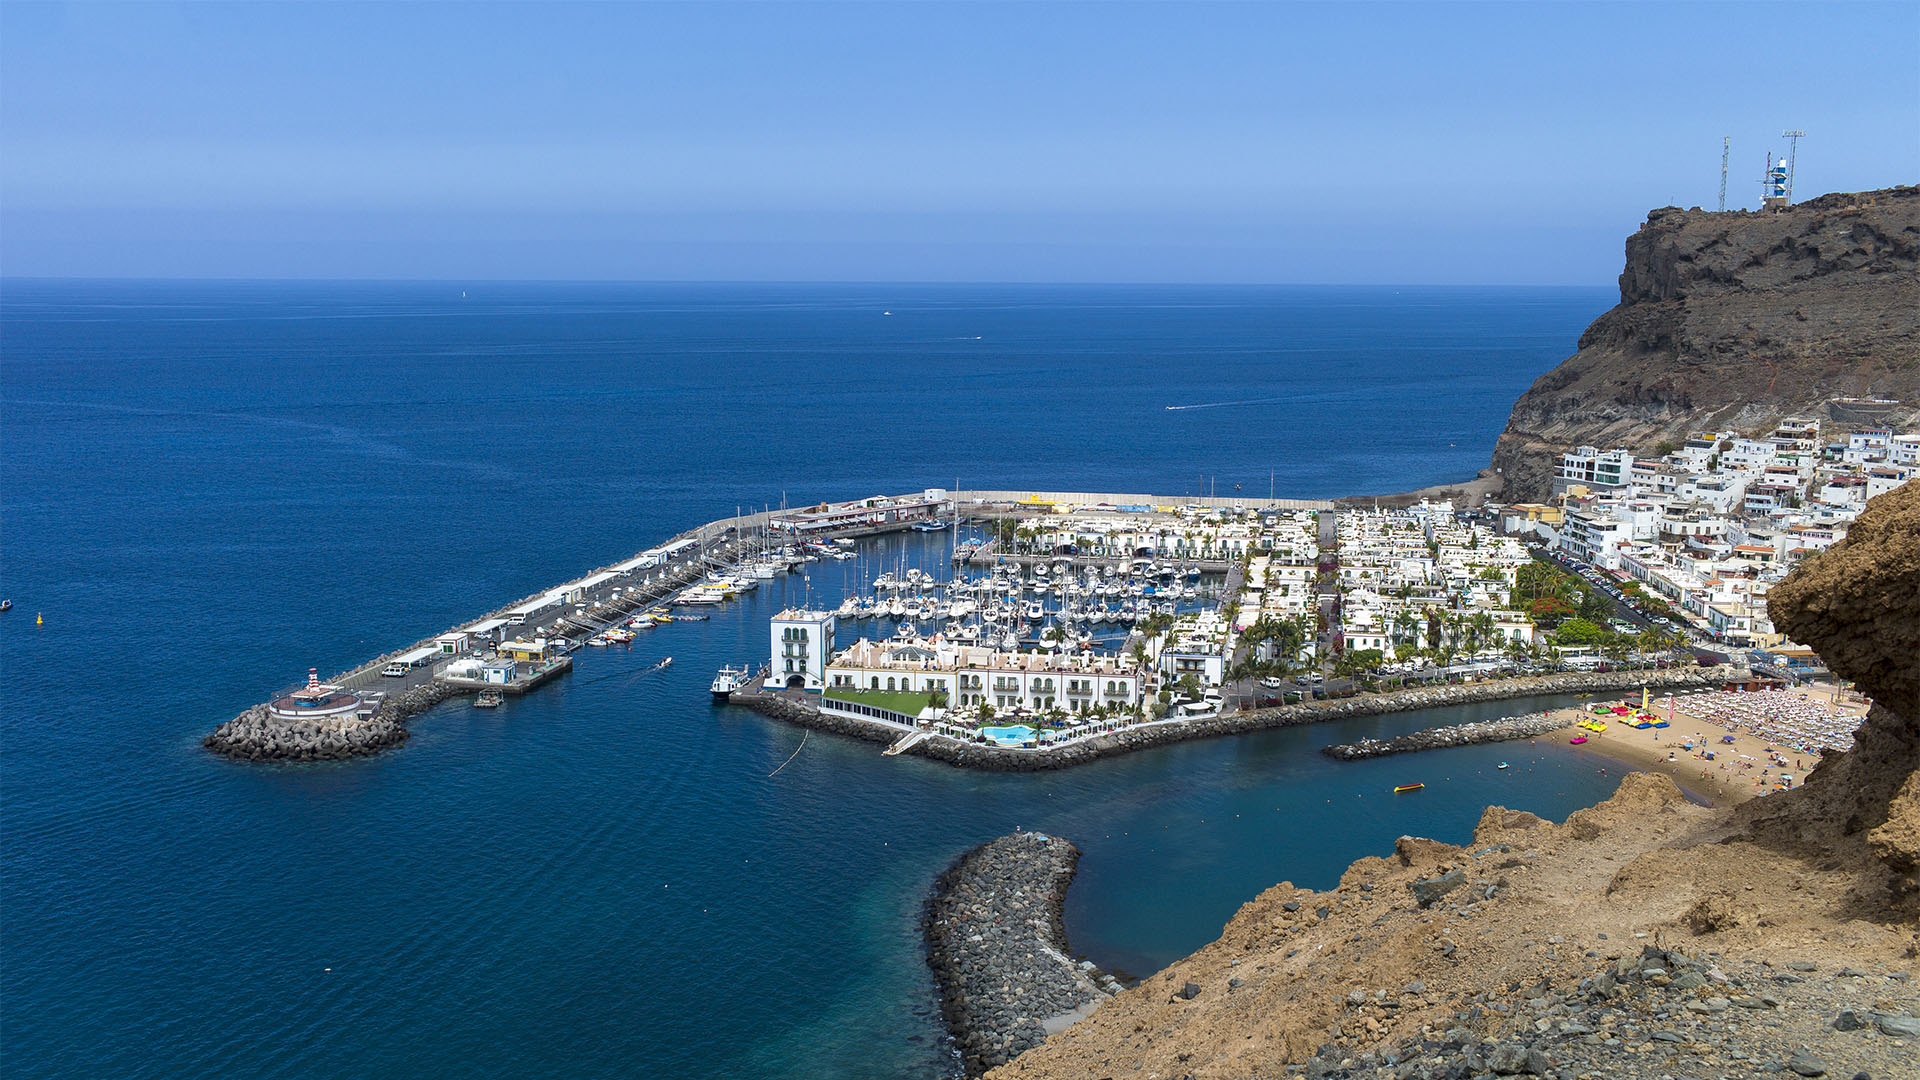 Puerto de Mogán: Eine Augenweide an der klimatisch mildesten Ecke Gran Canarias.